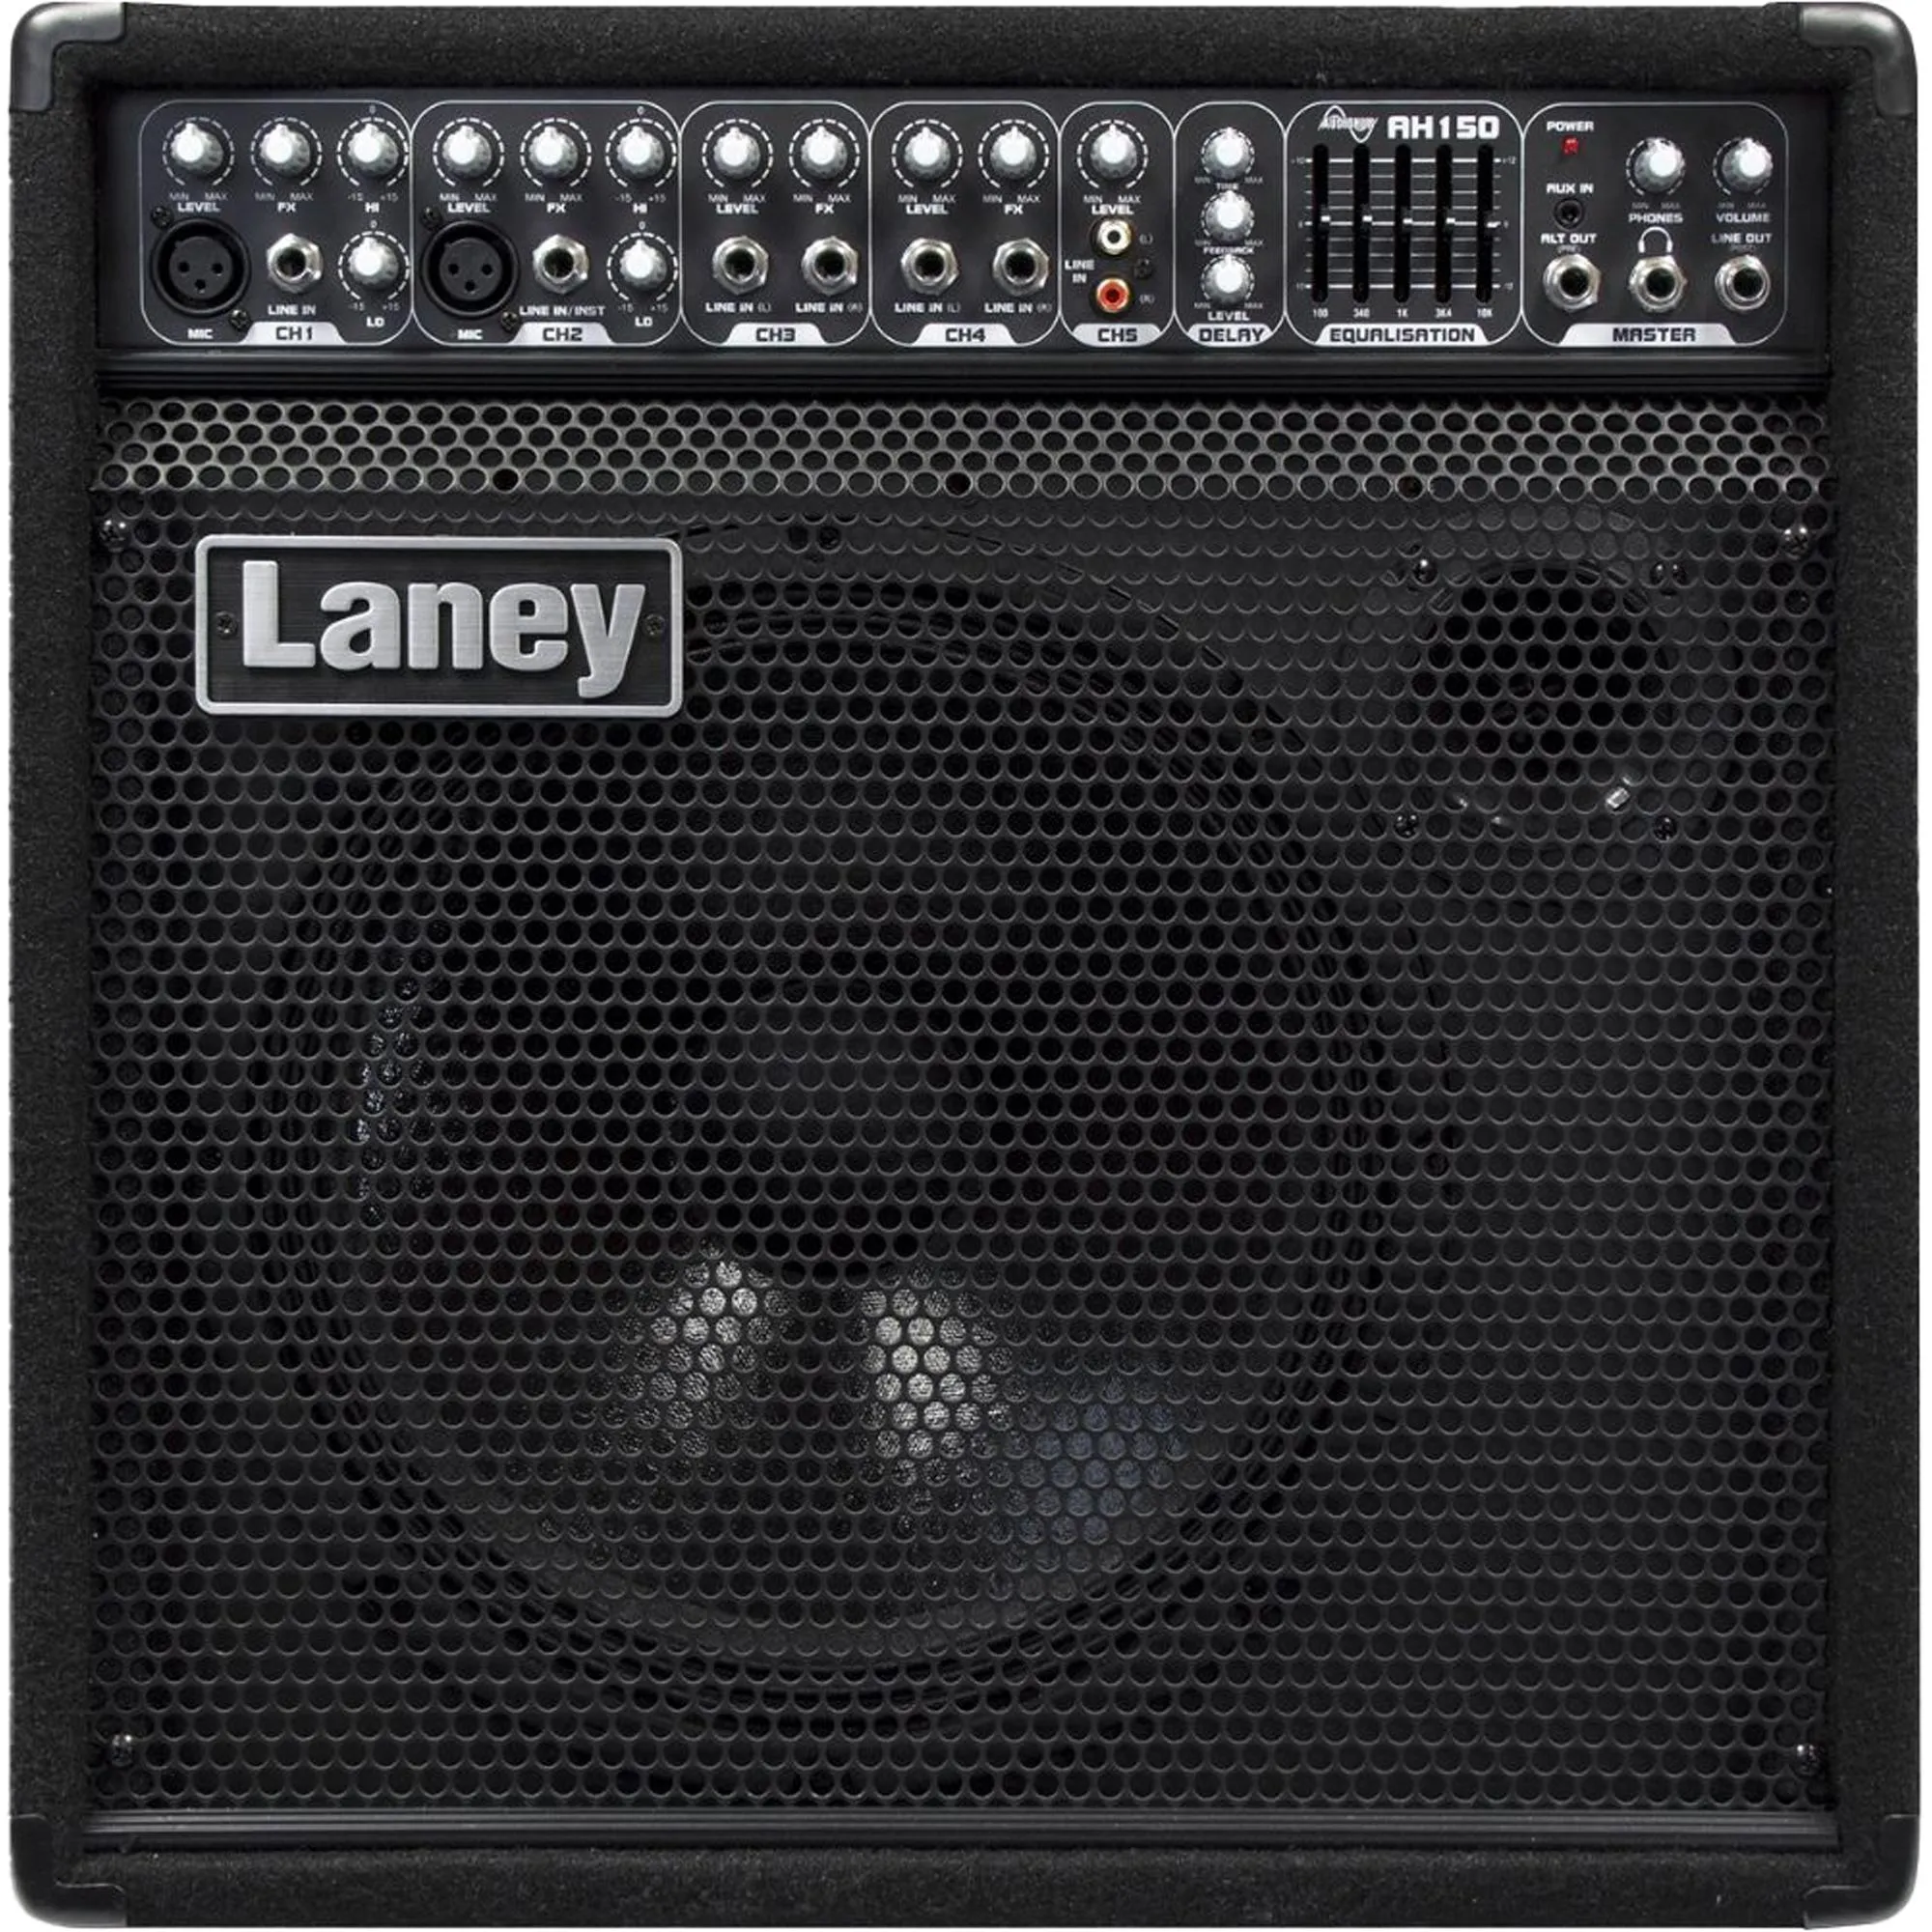 Amplificador Para Instrumentos Laney AH150 5 Canais por 5.054,00 à vista no boleto/pix ou parcele em até 12x sem juros. Compre na loja Mundomax!